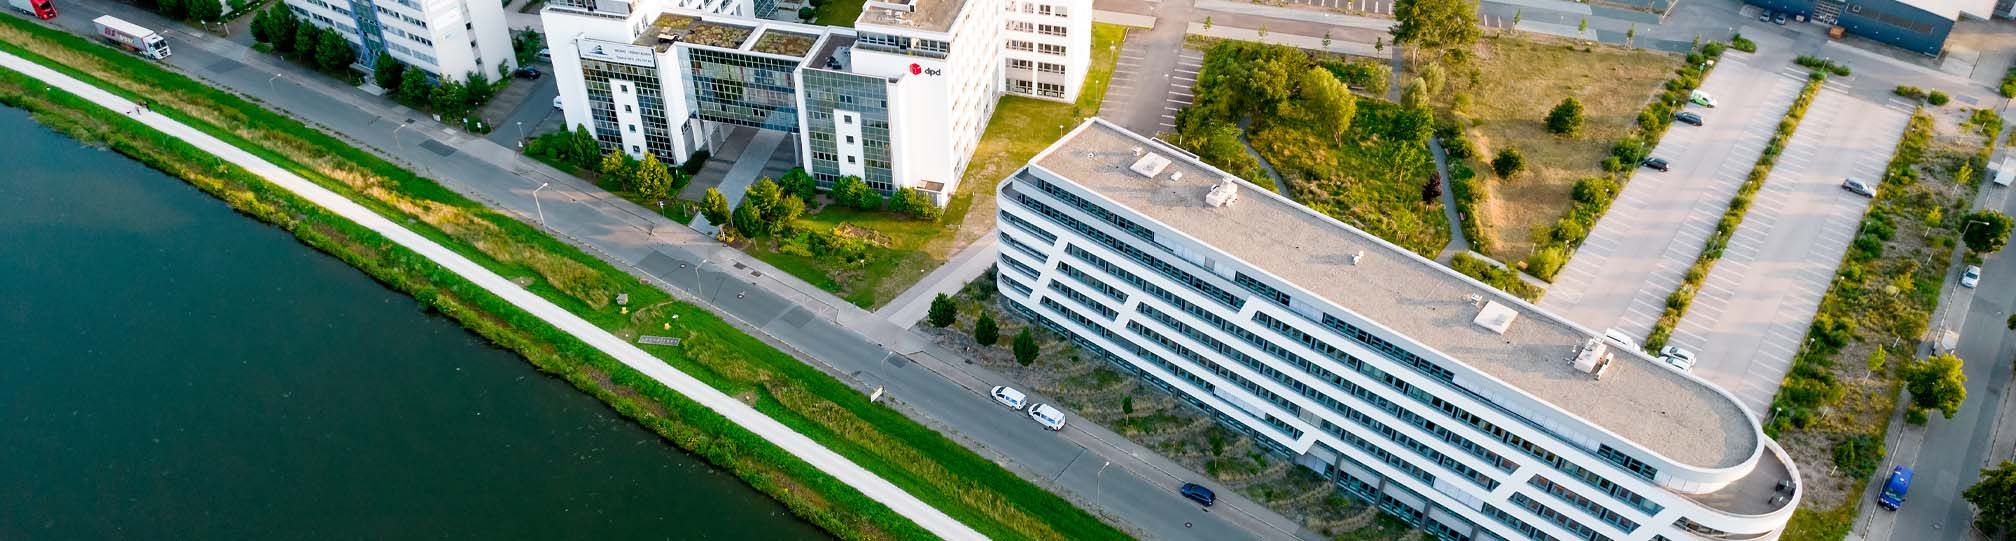 Gewerbeimmobilien in Nürnberg / Fürth -Büropark am Main Donau Kanal - Gutenstetter Straße  